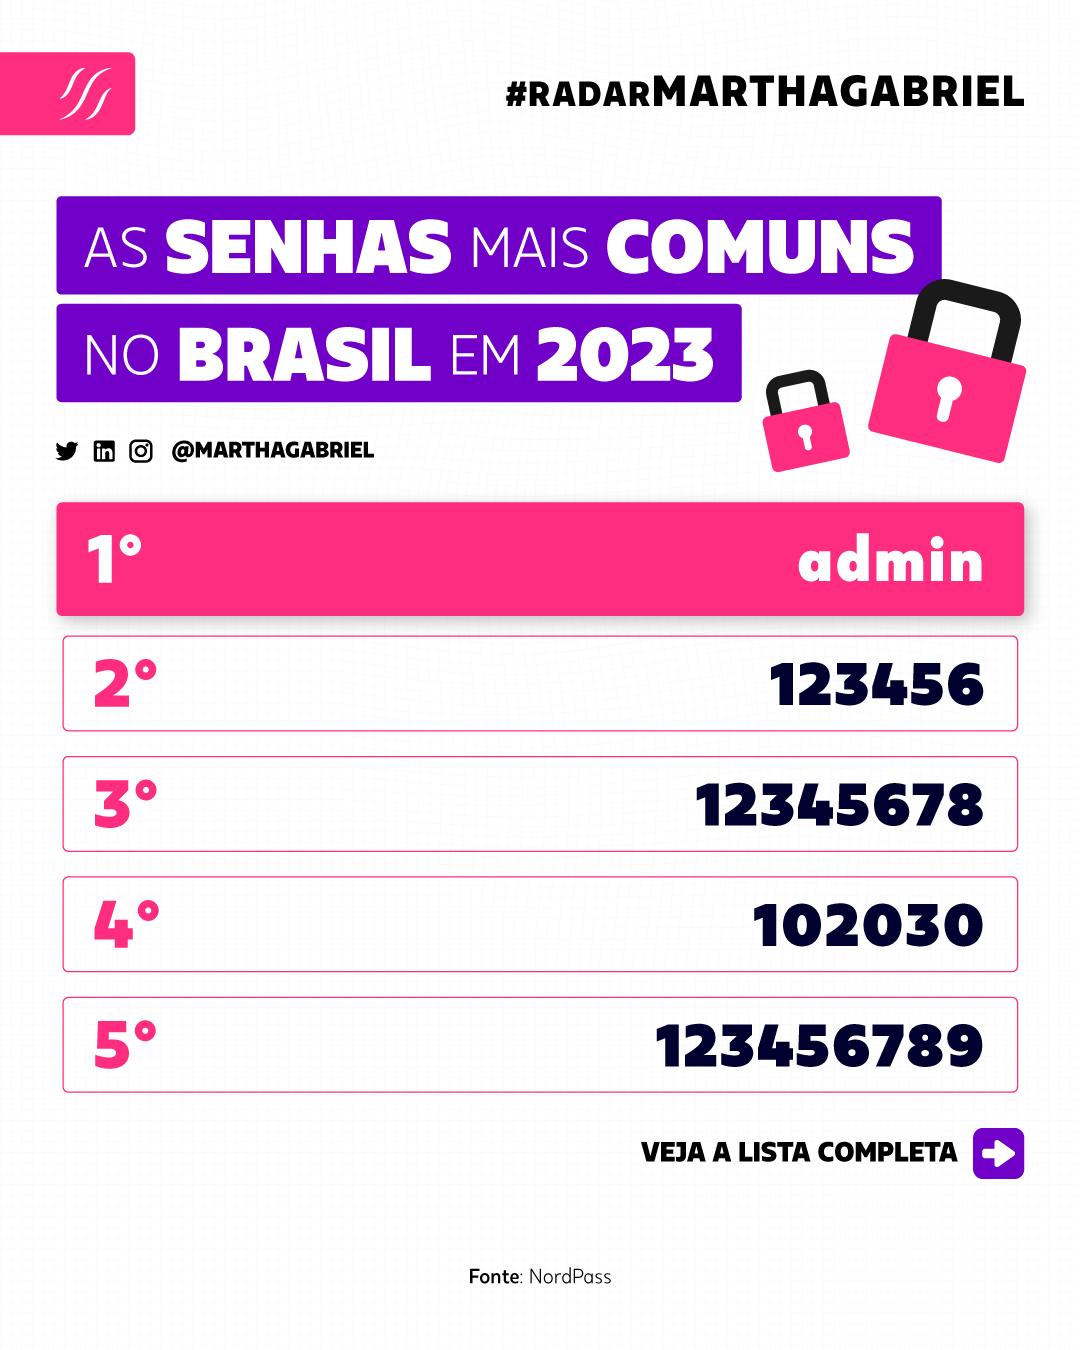 As senhas mais comuns no Brasil em 2023